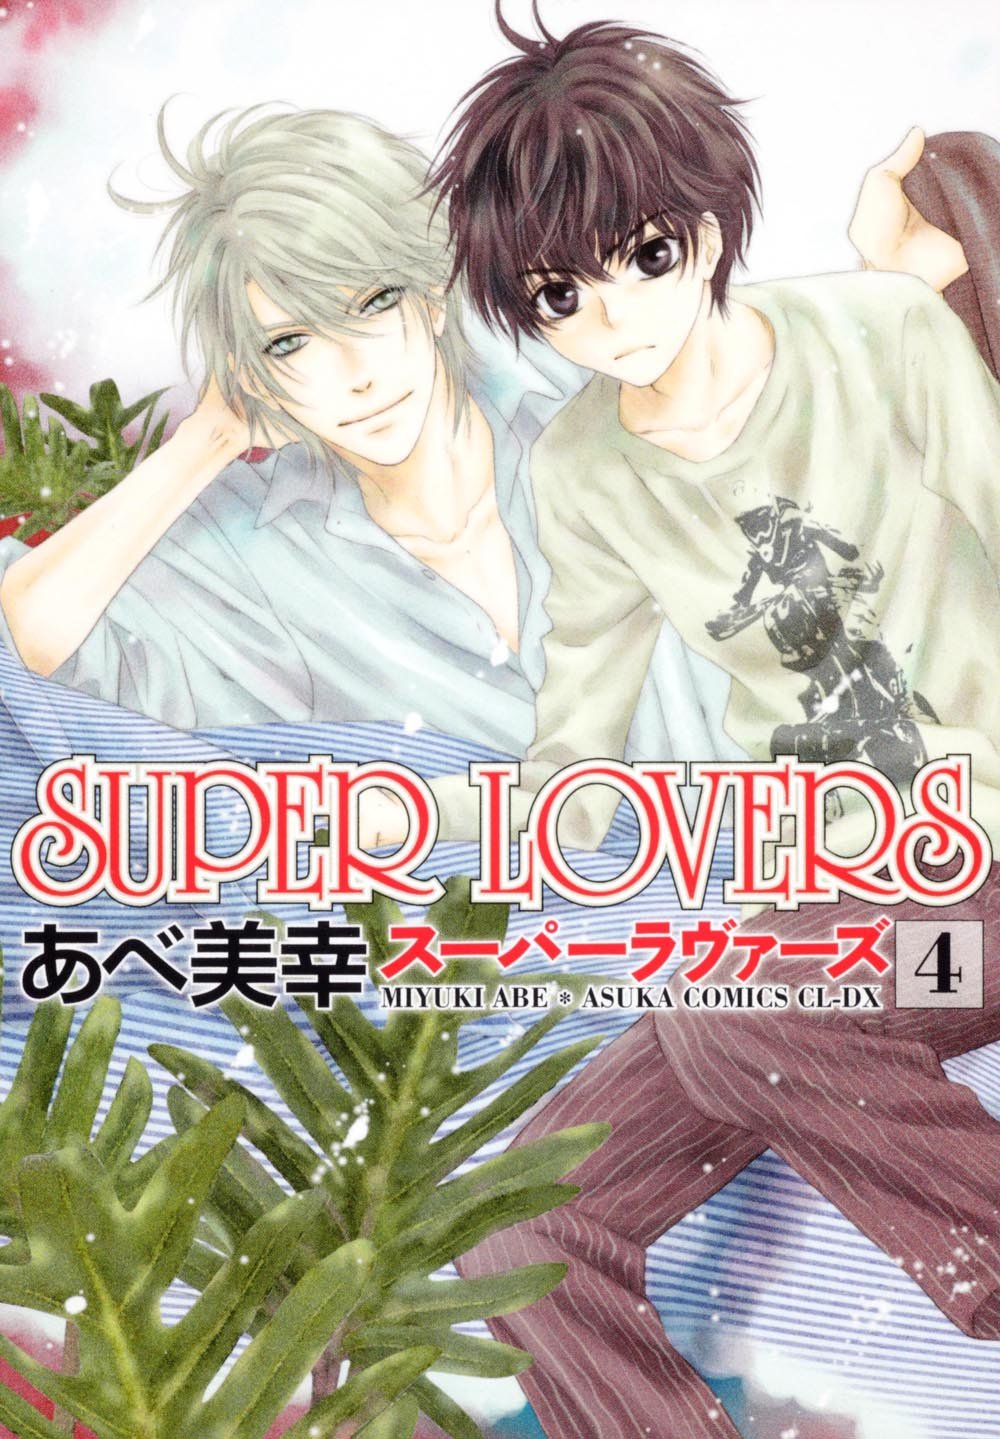 Super Lovers - Ler mangá online em Português (PT-BR)